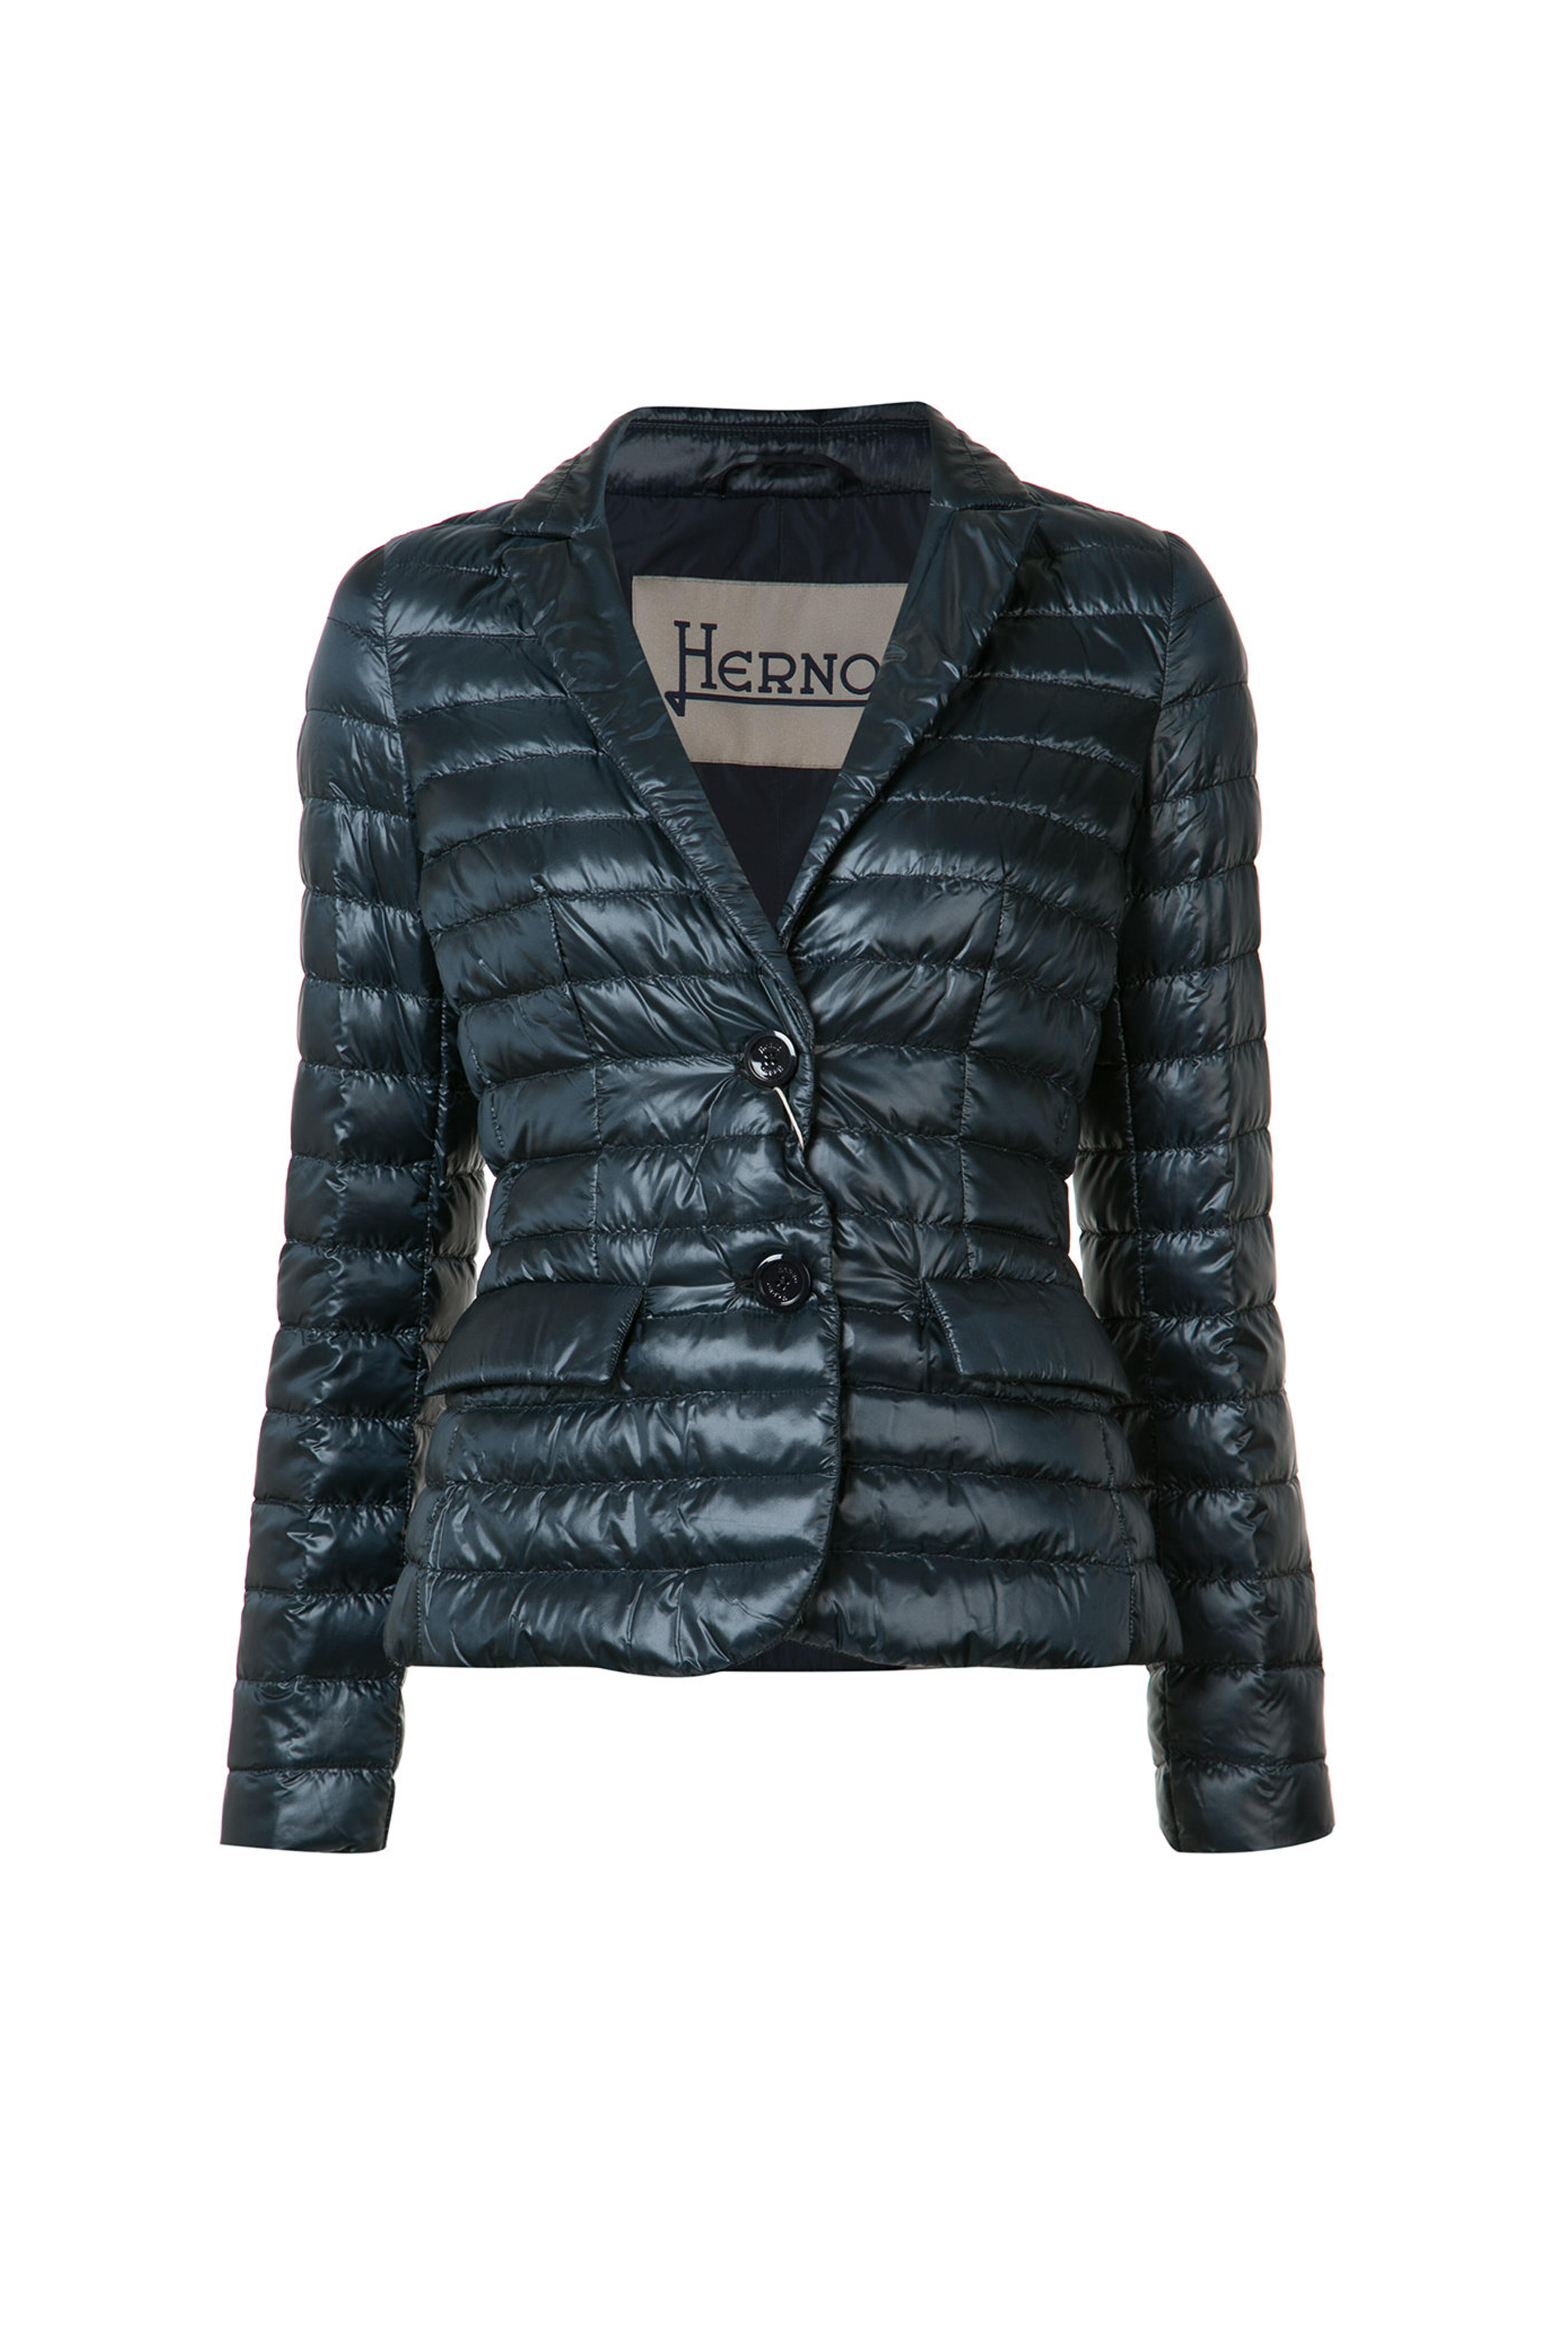 Herno - Blazer Padded Taffeta Back Jacket | Mitchell Stores